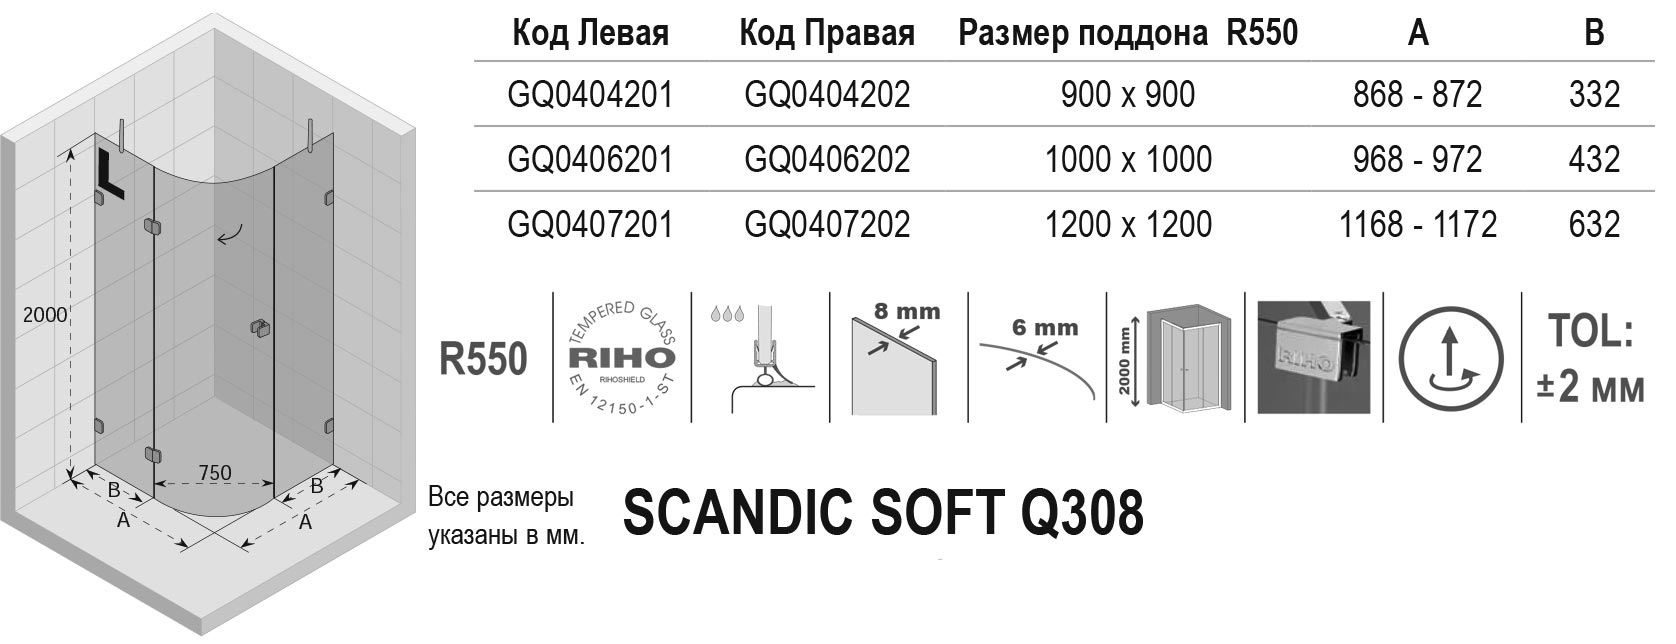 Чертёж Riho Scandic Soft Q308 GQ0404202